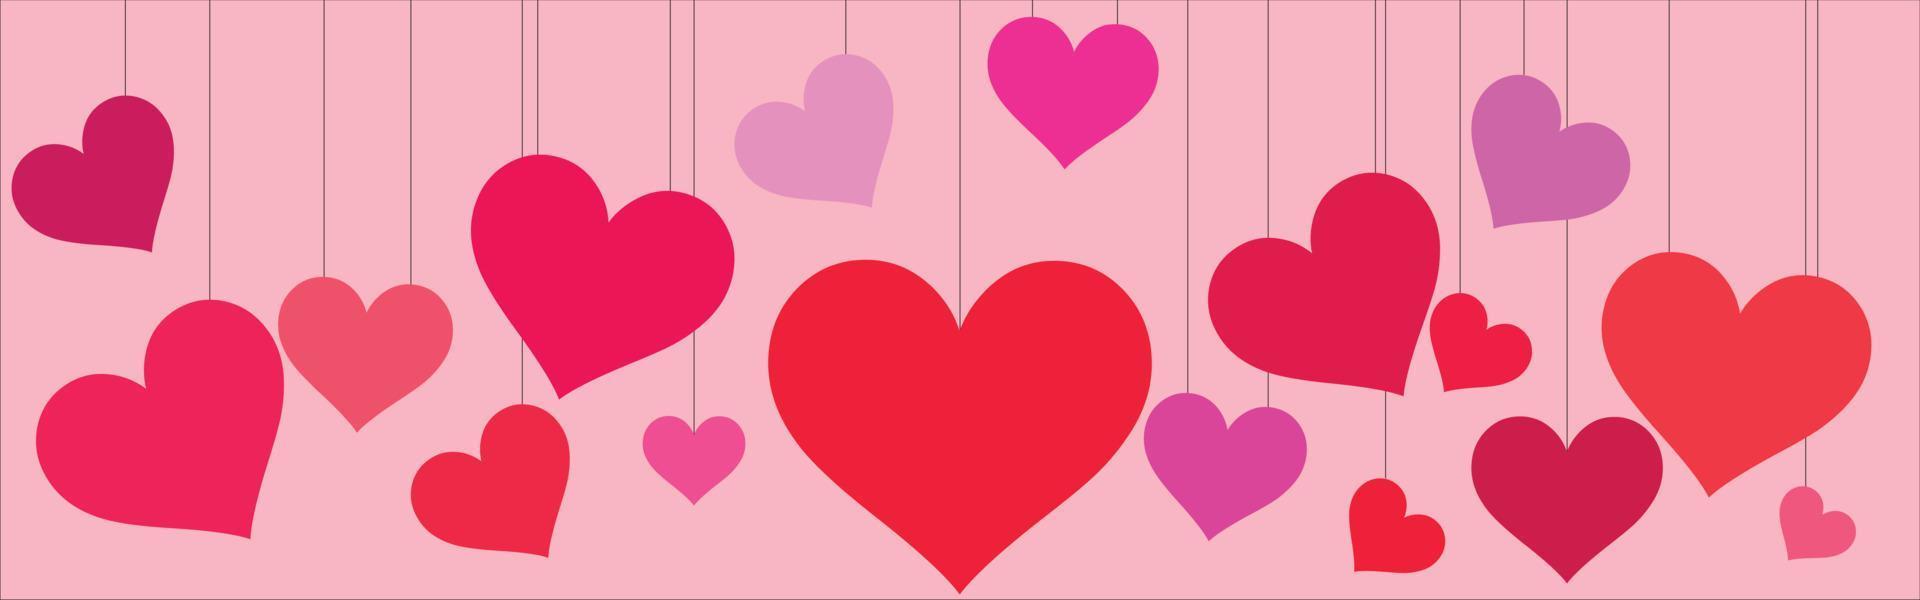 cartão do dia dos namorados feliz santo, banner horizontal com nuvens de corte de papel e objetos de férias em fundo rosa. vetor